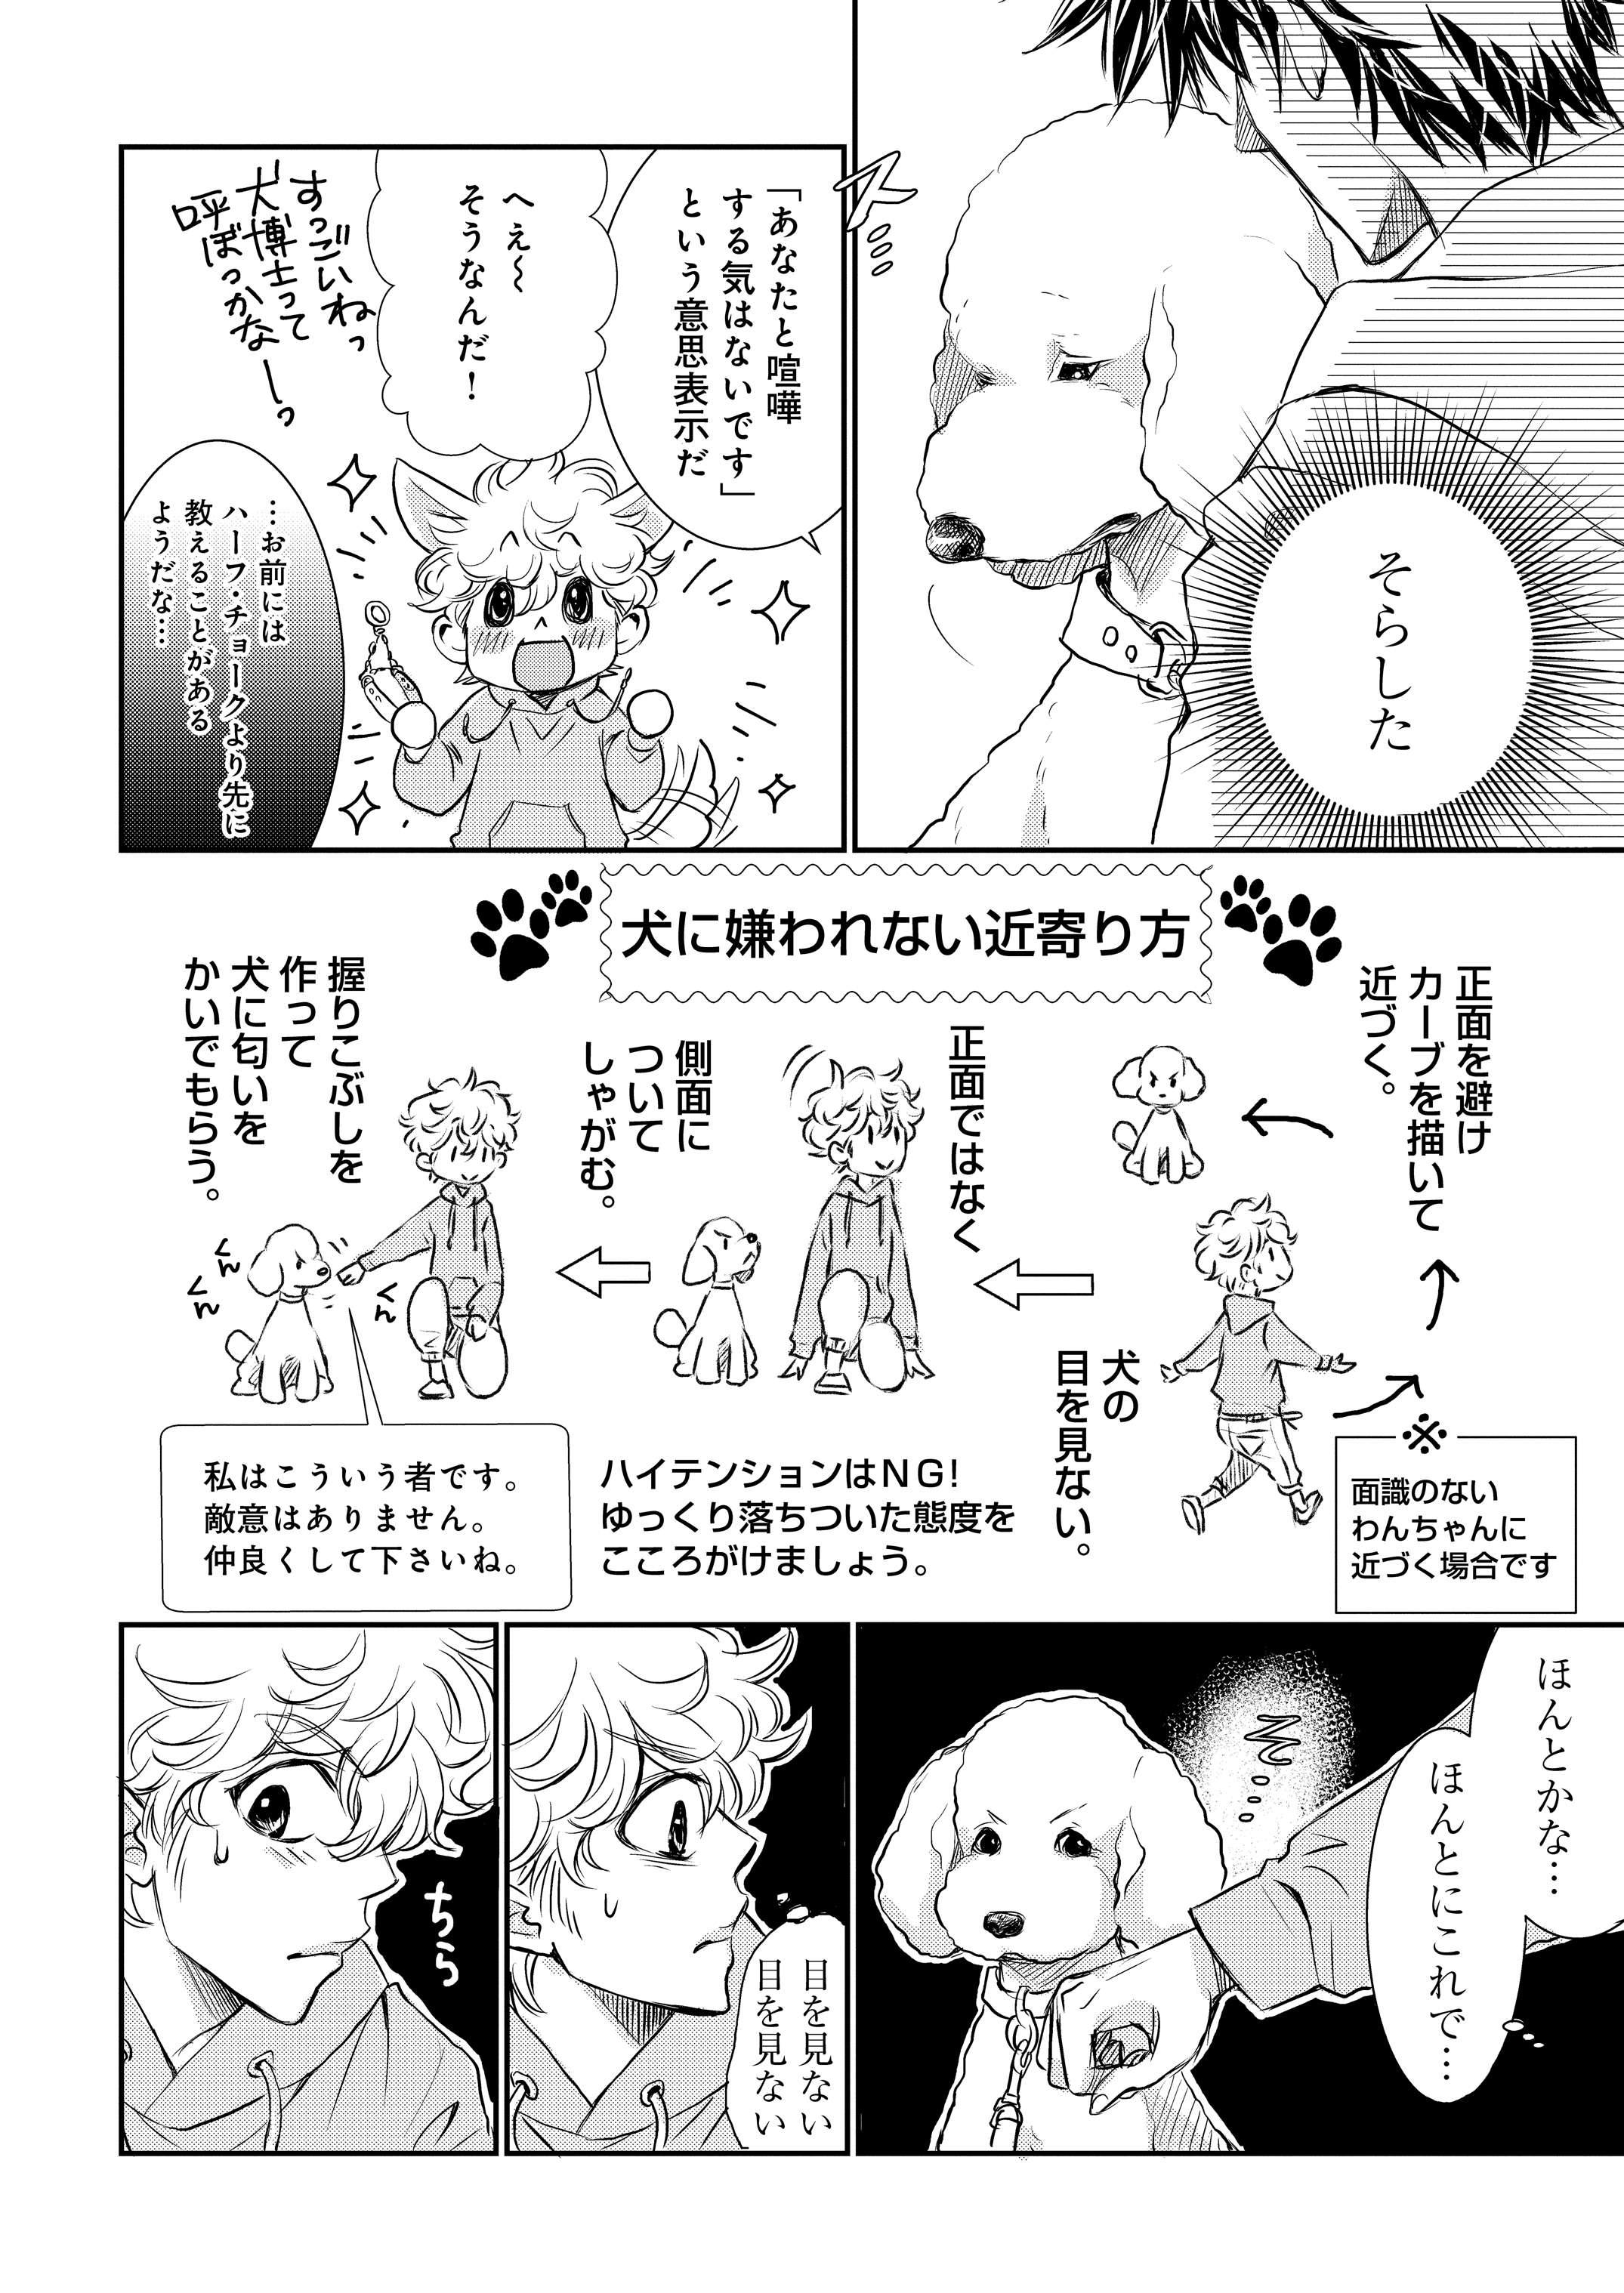 【新連載】『DOG SIGNAL』1話目③　7ページ目